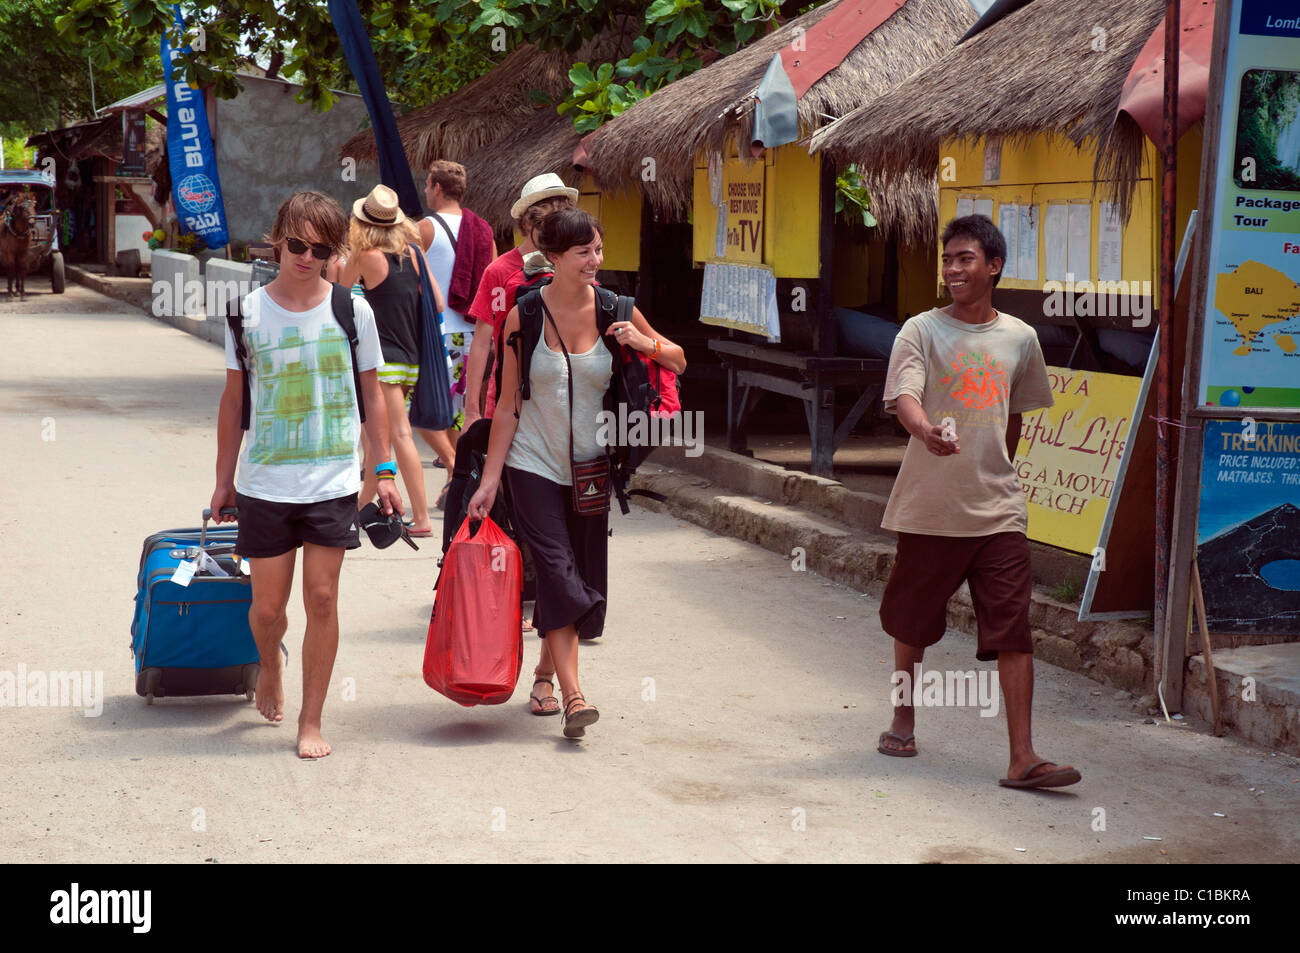 Les touristes d'être conduit à l'hébergement via un tout sur l'île de Gili Trawangan, près de Lombok, Indonésie Banque D'Images